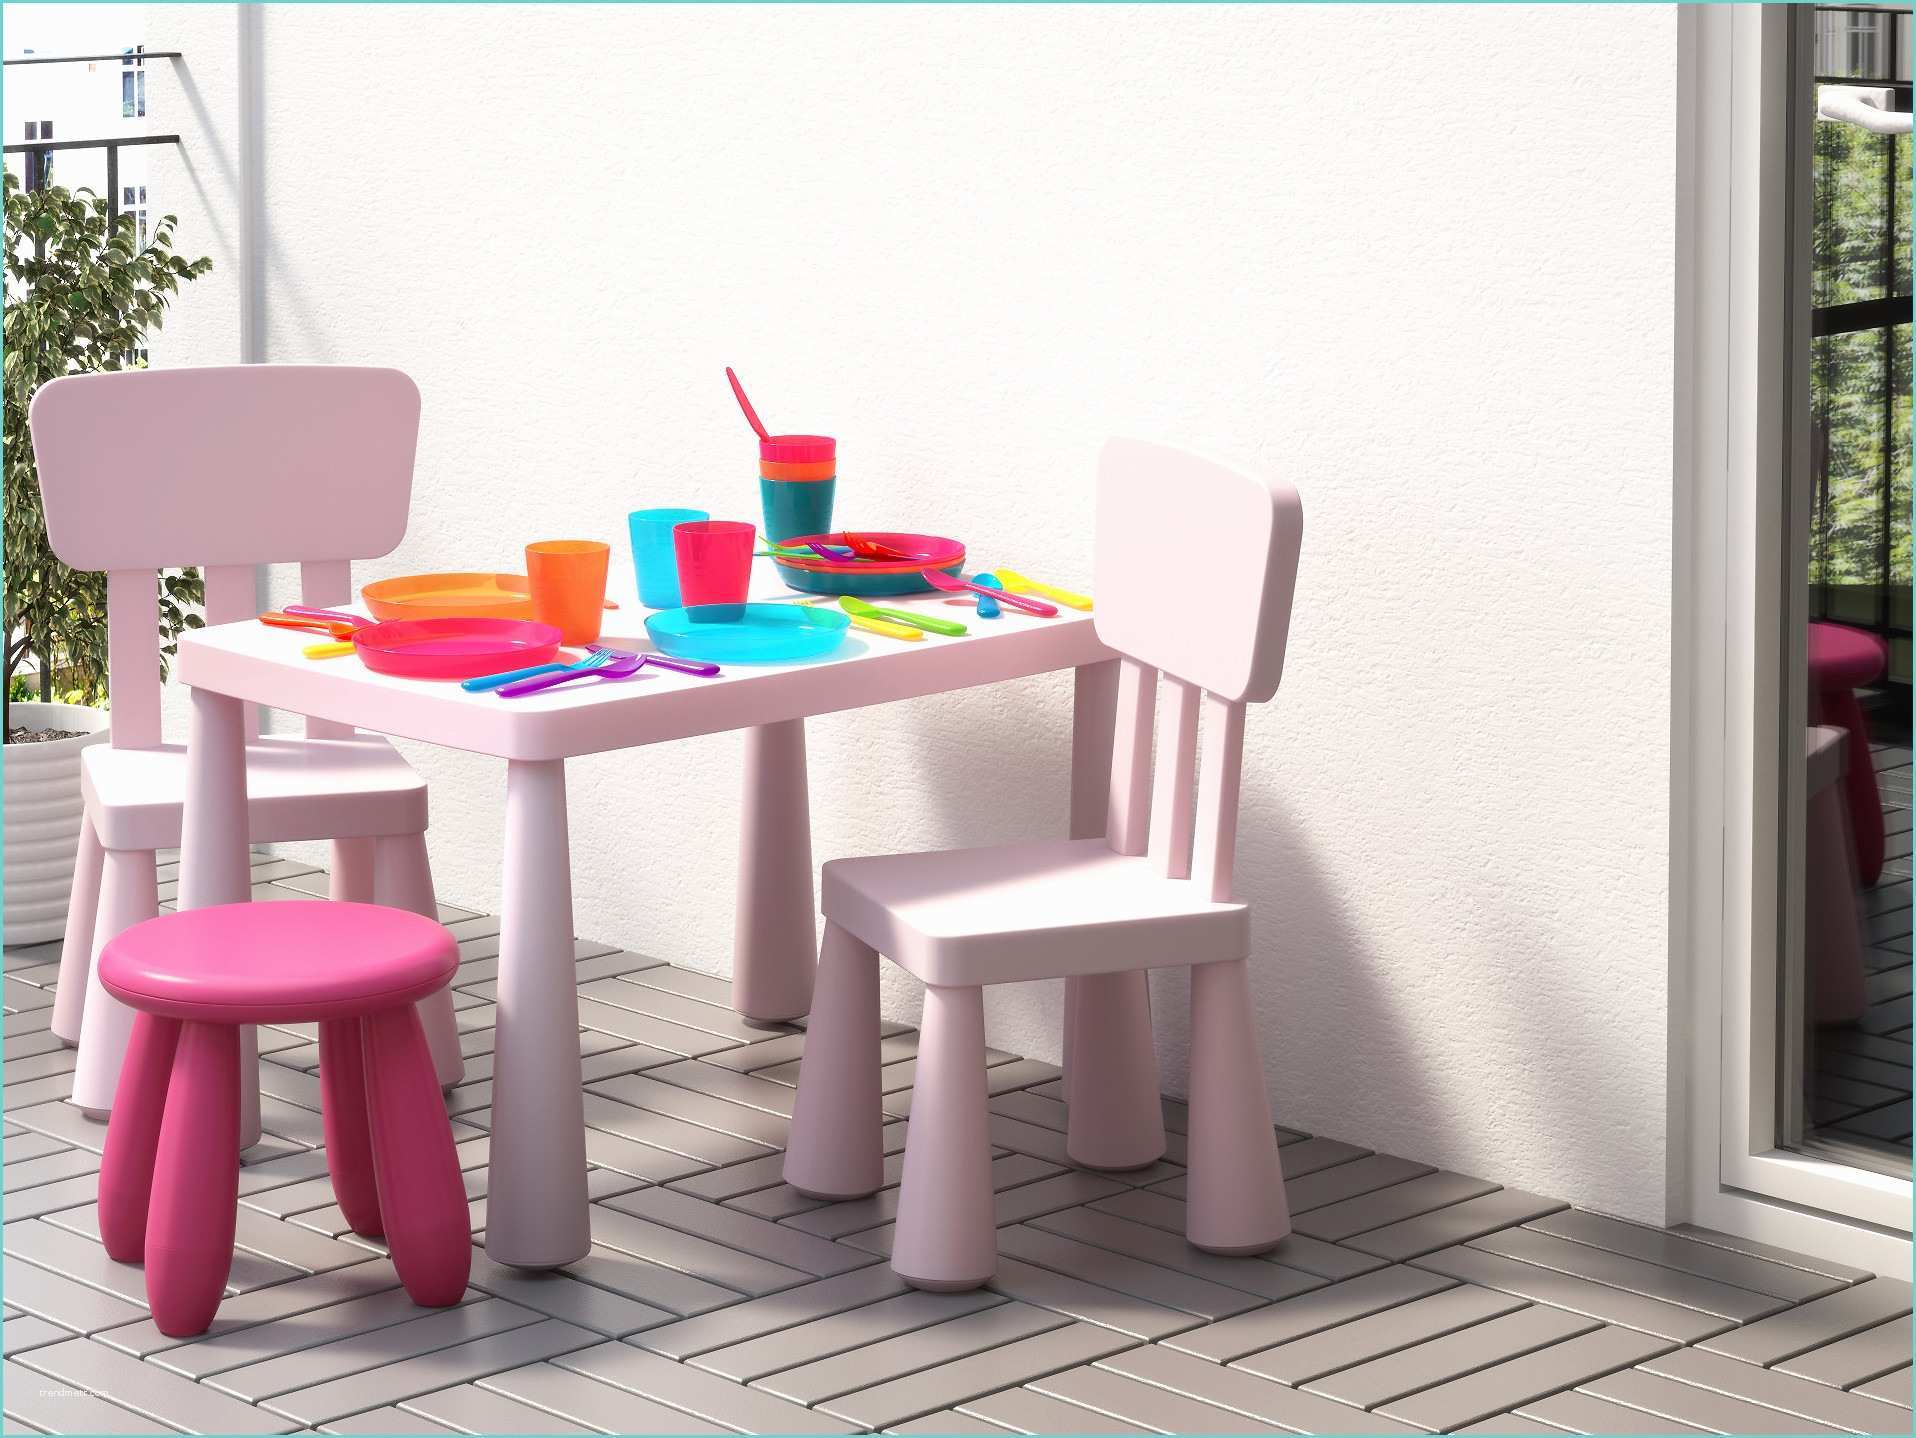 Table De Jardin Ikea Salon De Jardin Pour Enfants Du Mobilier Me Les